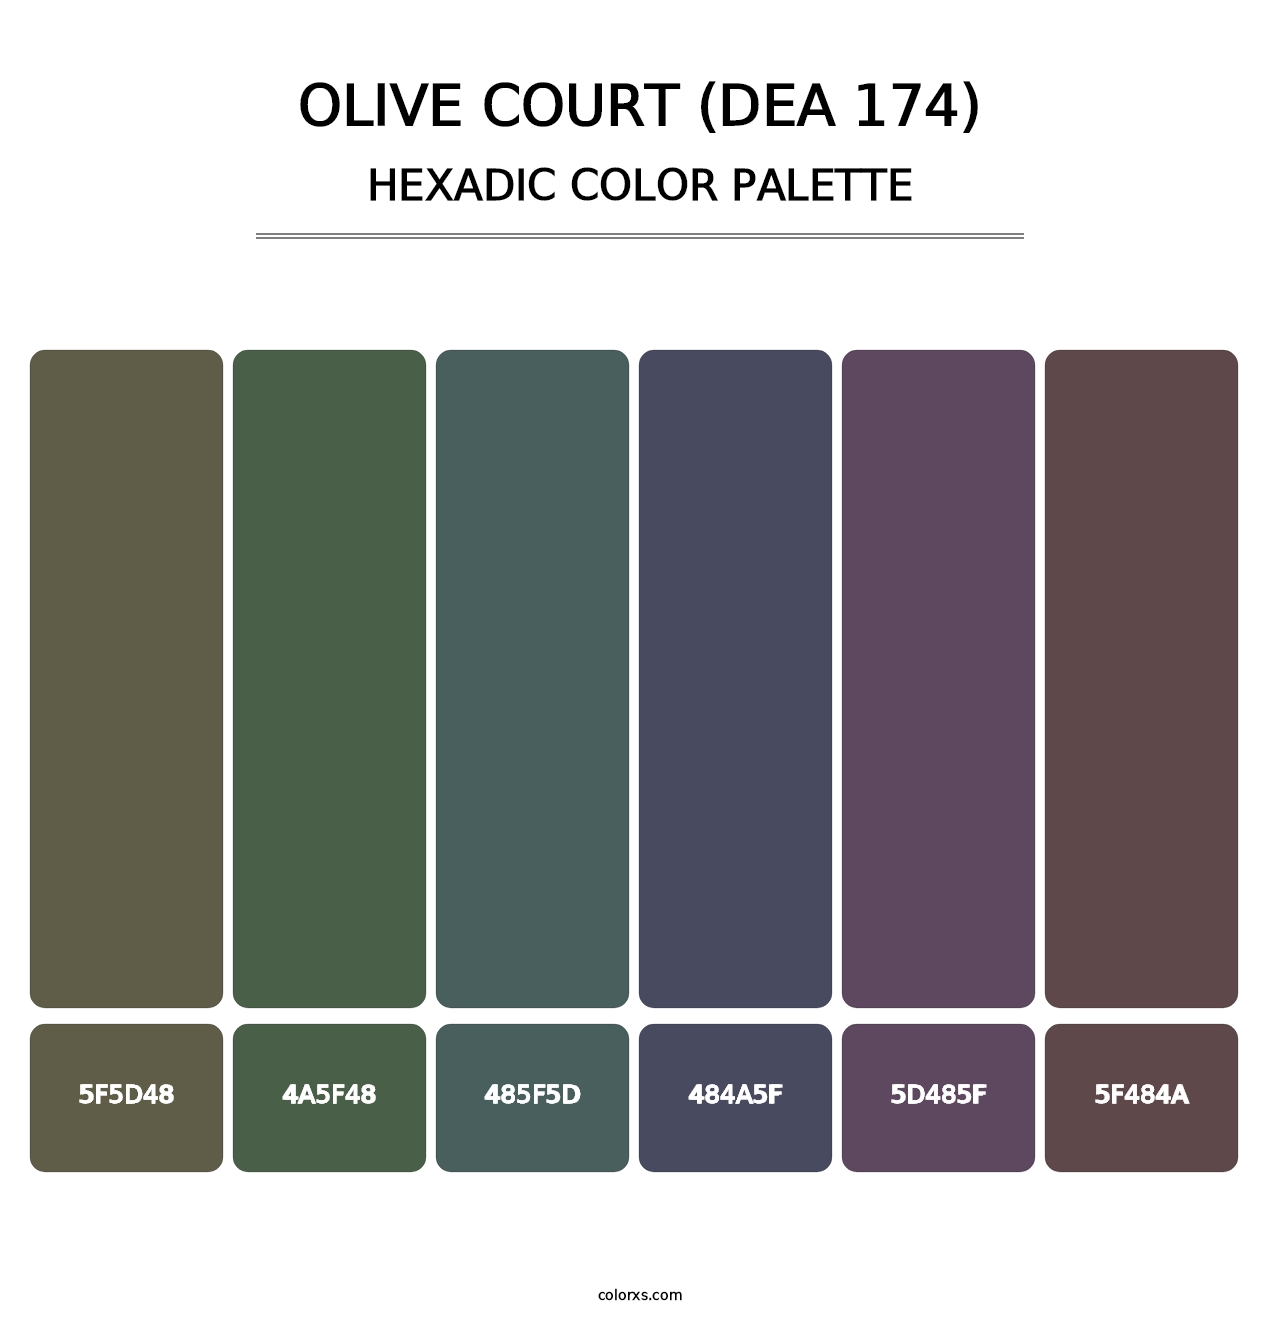 Olive Court (DEA 174) - Hexadic Color Palette